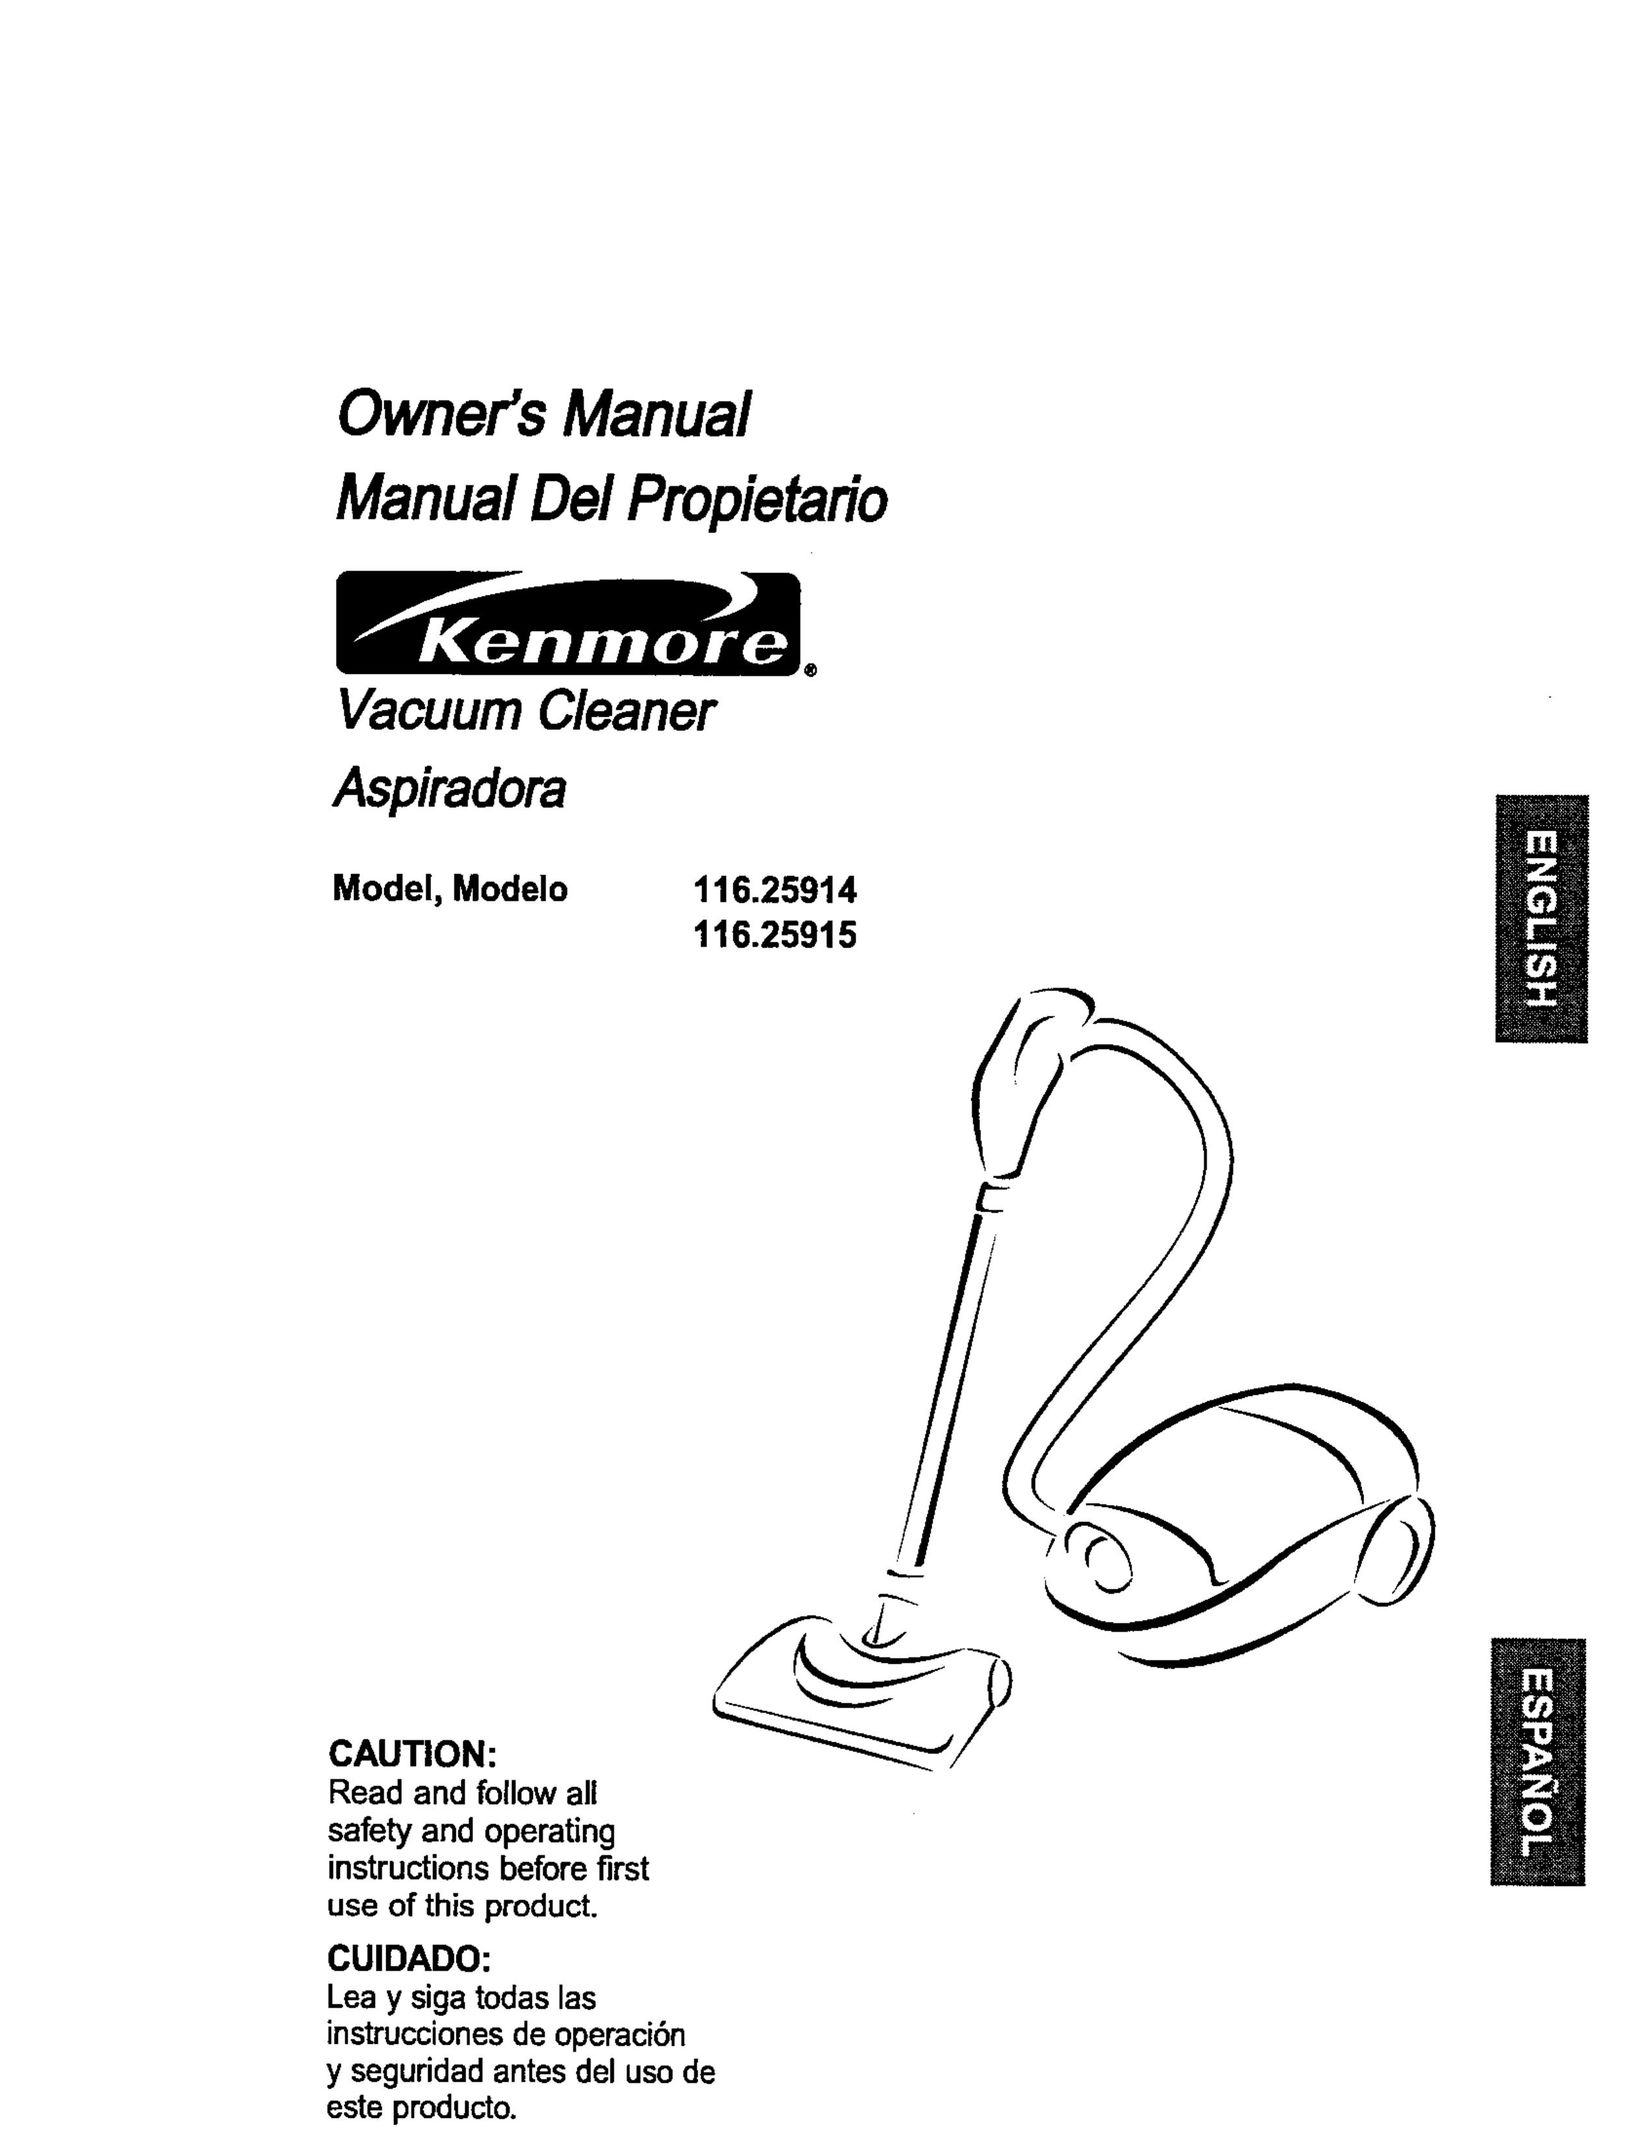 Kenmore 116.25915 Vacuum Cleaner User Manual